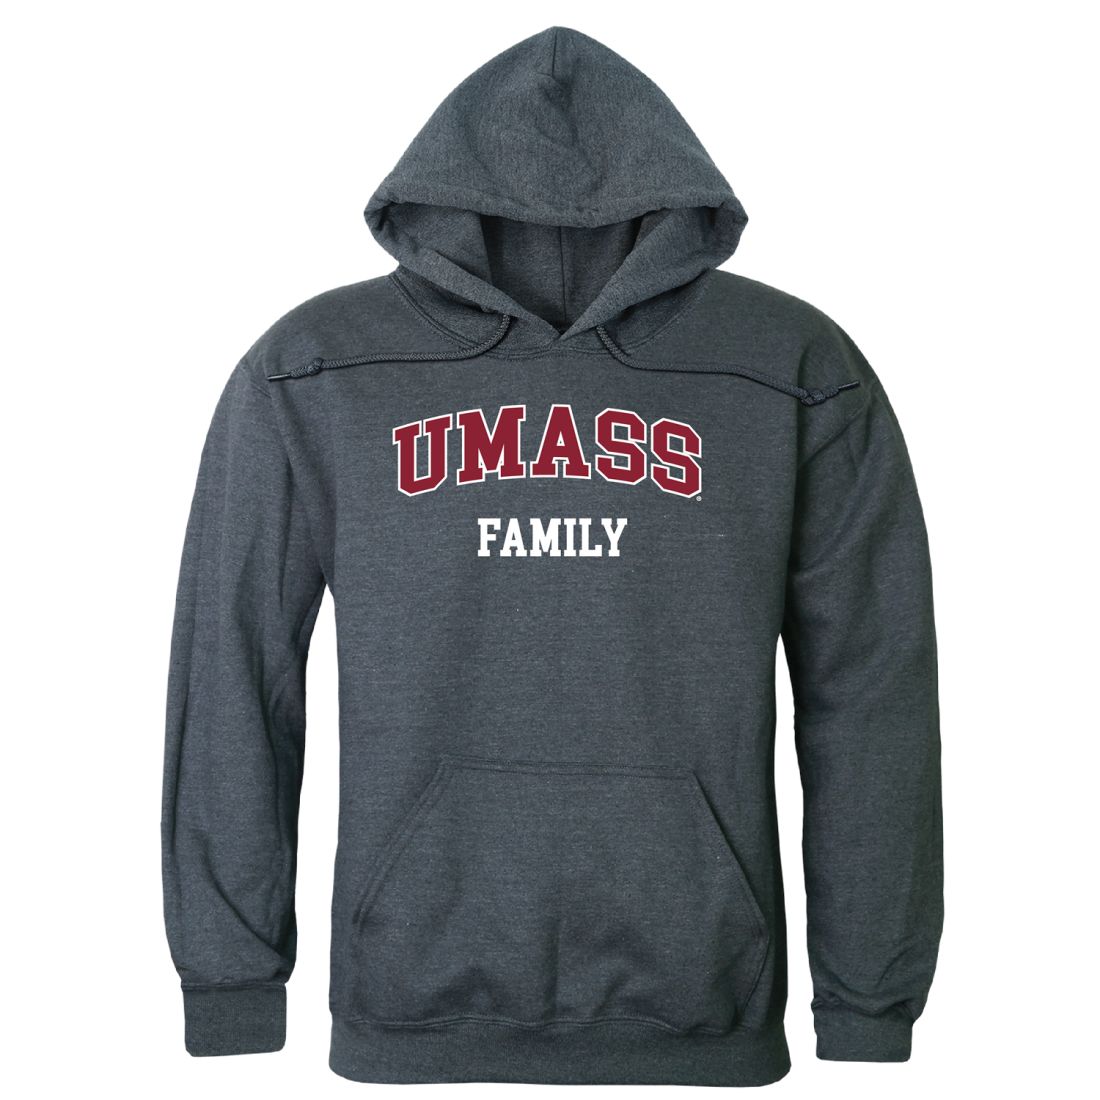 UMASS University of Massachusetts Amherst Minuteman Family Hoodie Sweatshirts